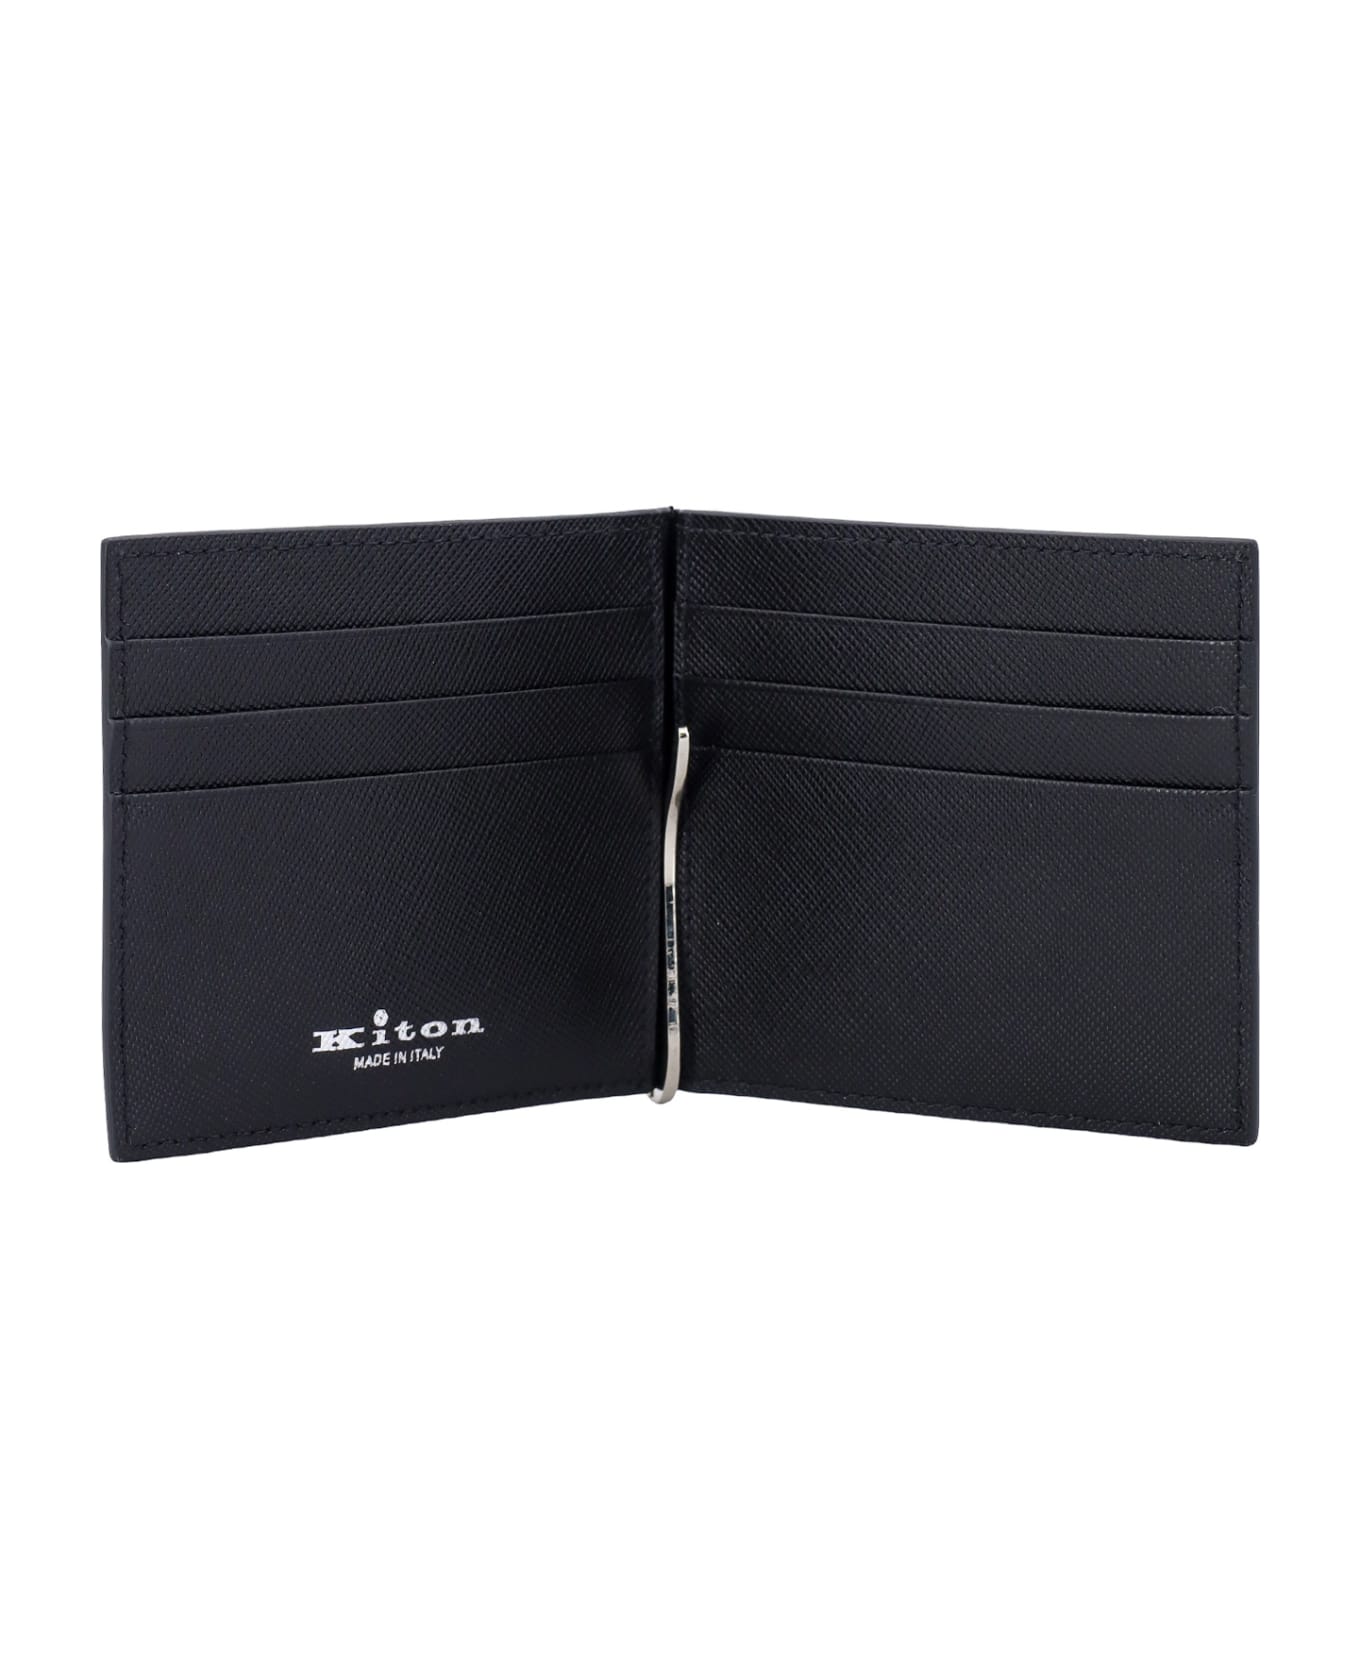 Kiton Card Holder - Black